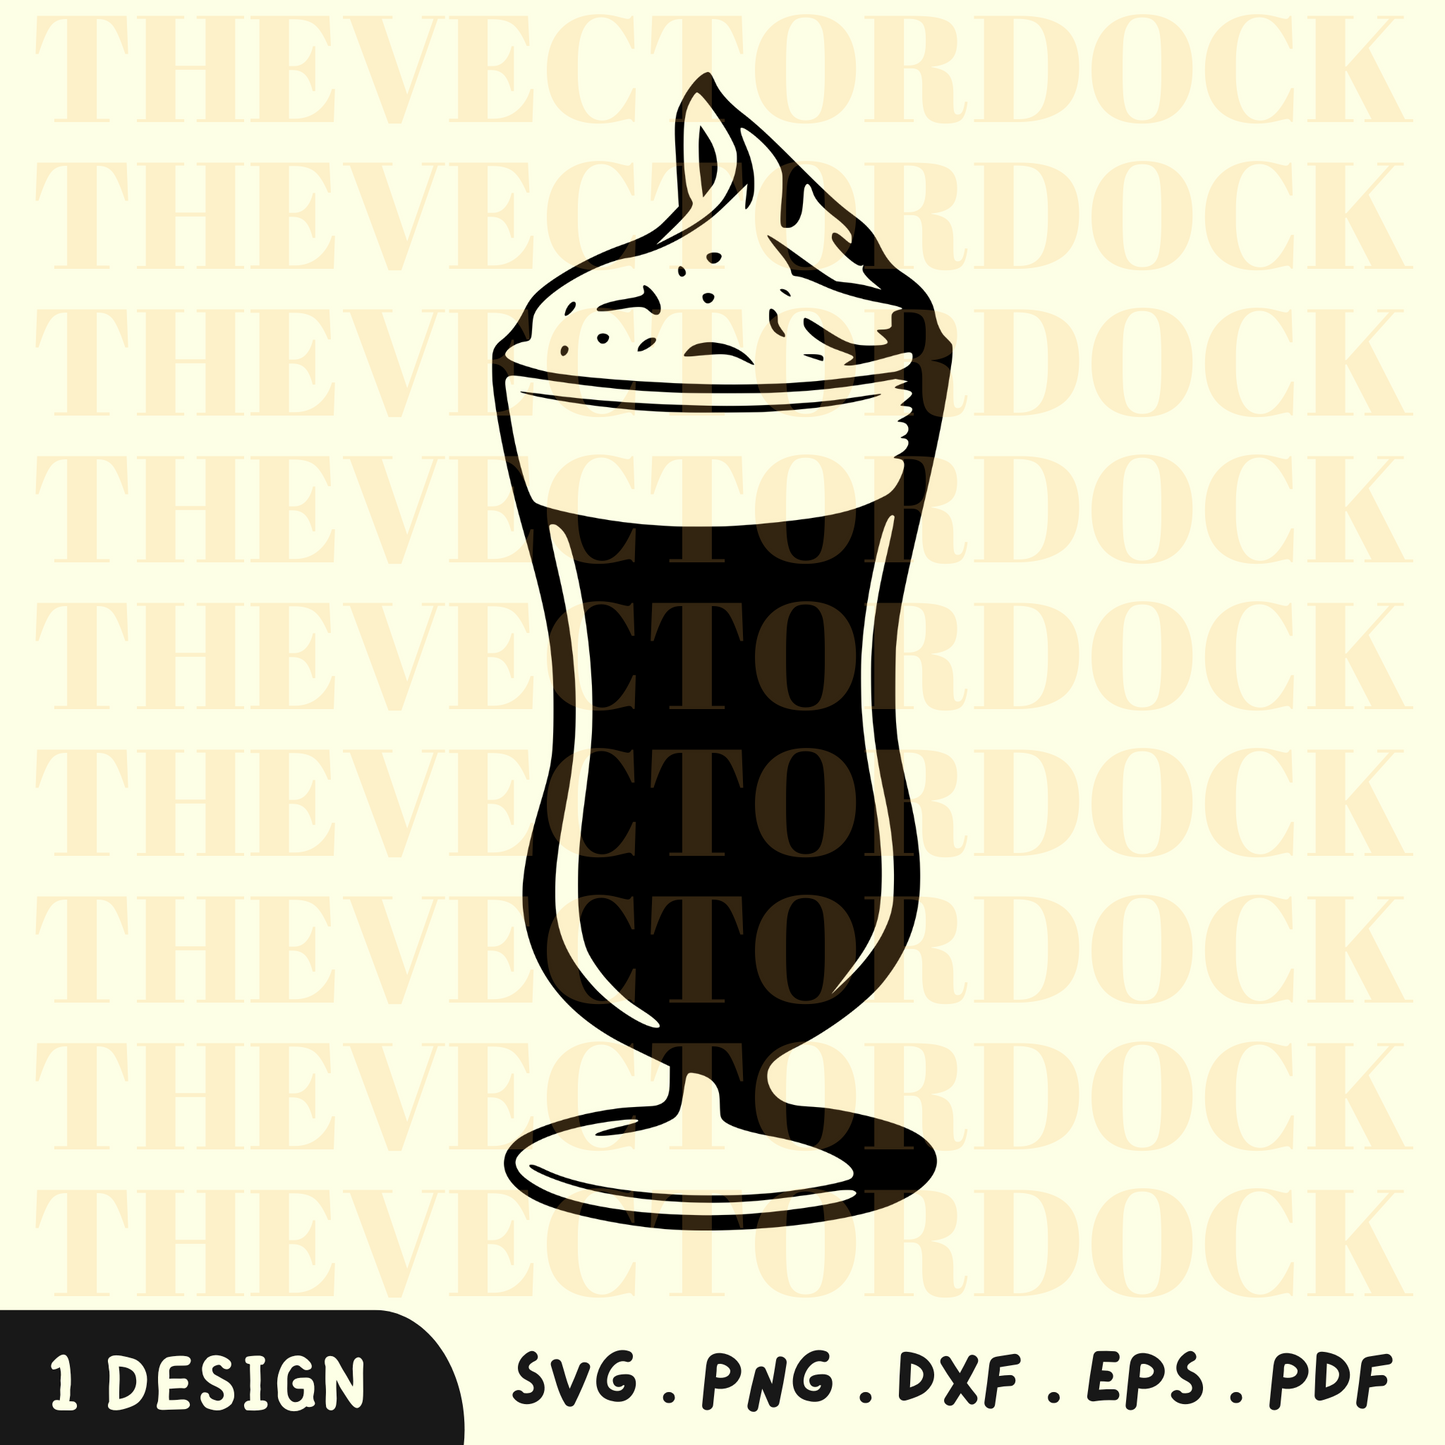 Milkshake SVG Design, Milkshake SVG, Milkshake SVG, Milkshake PNG, Milkshake Vector